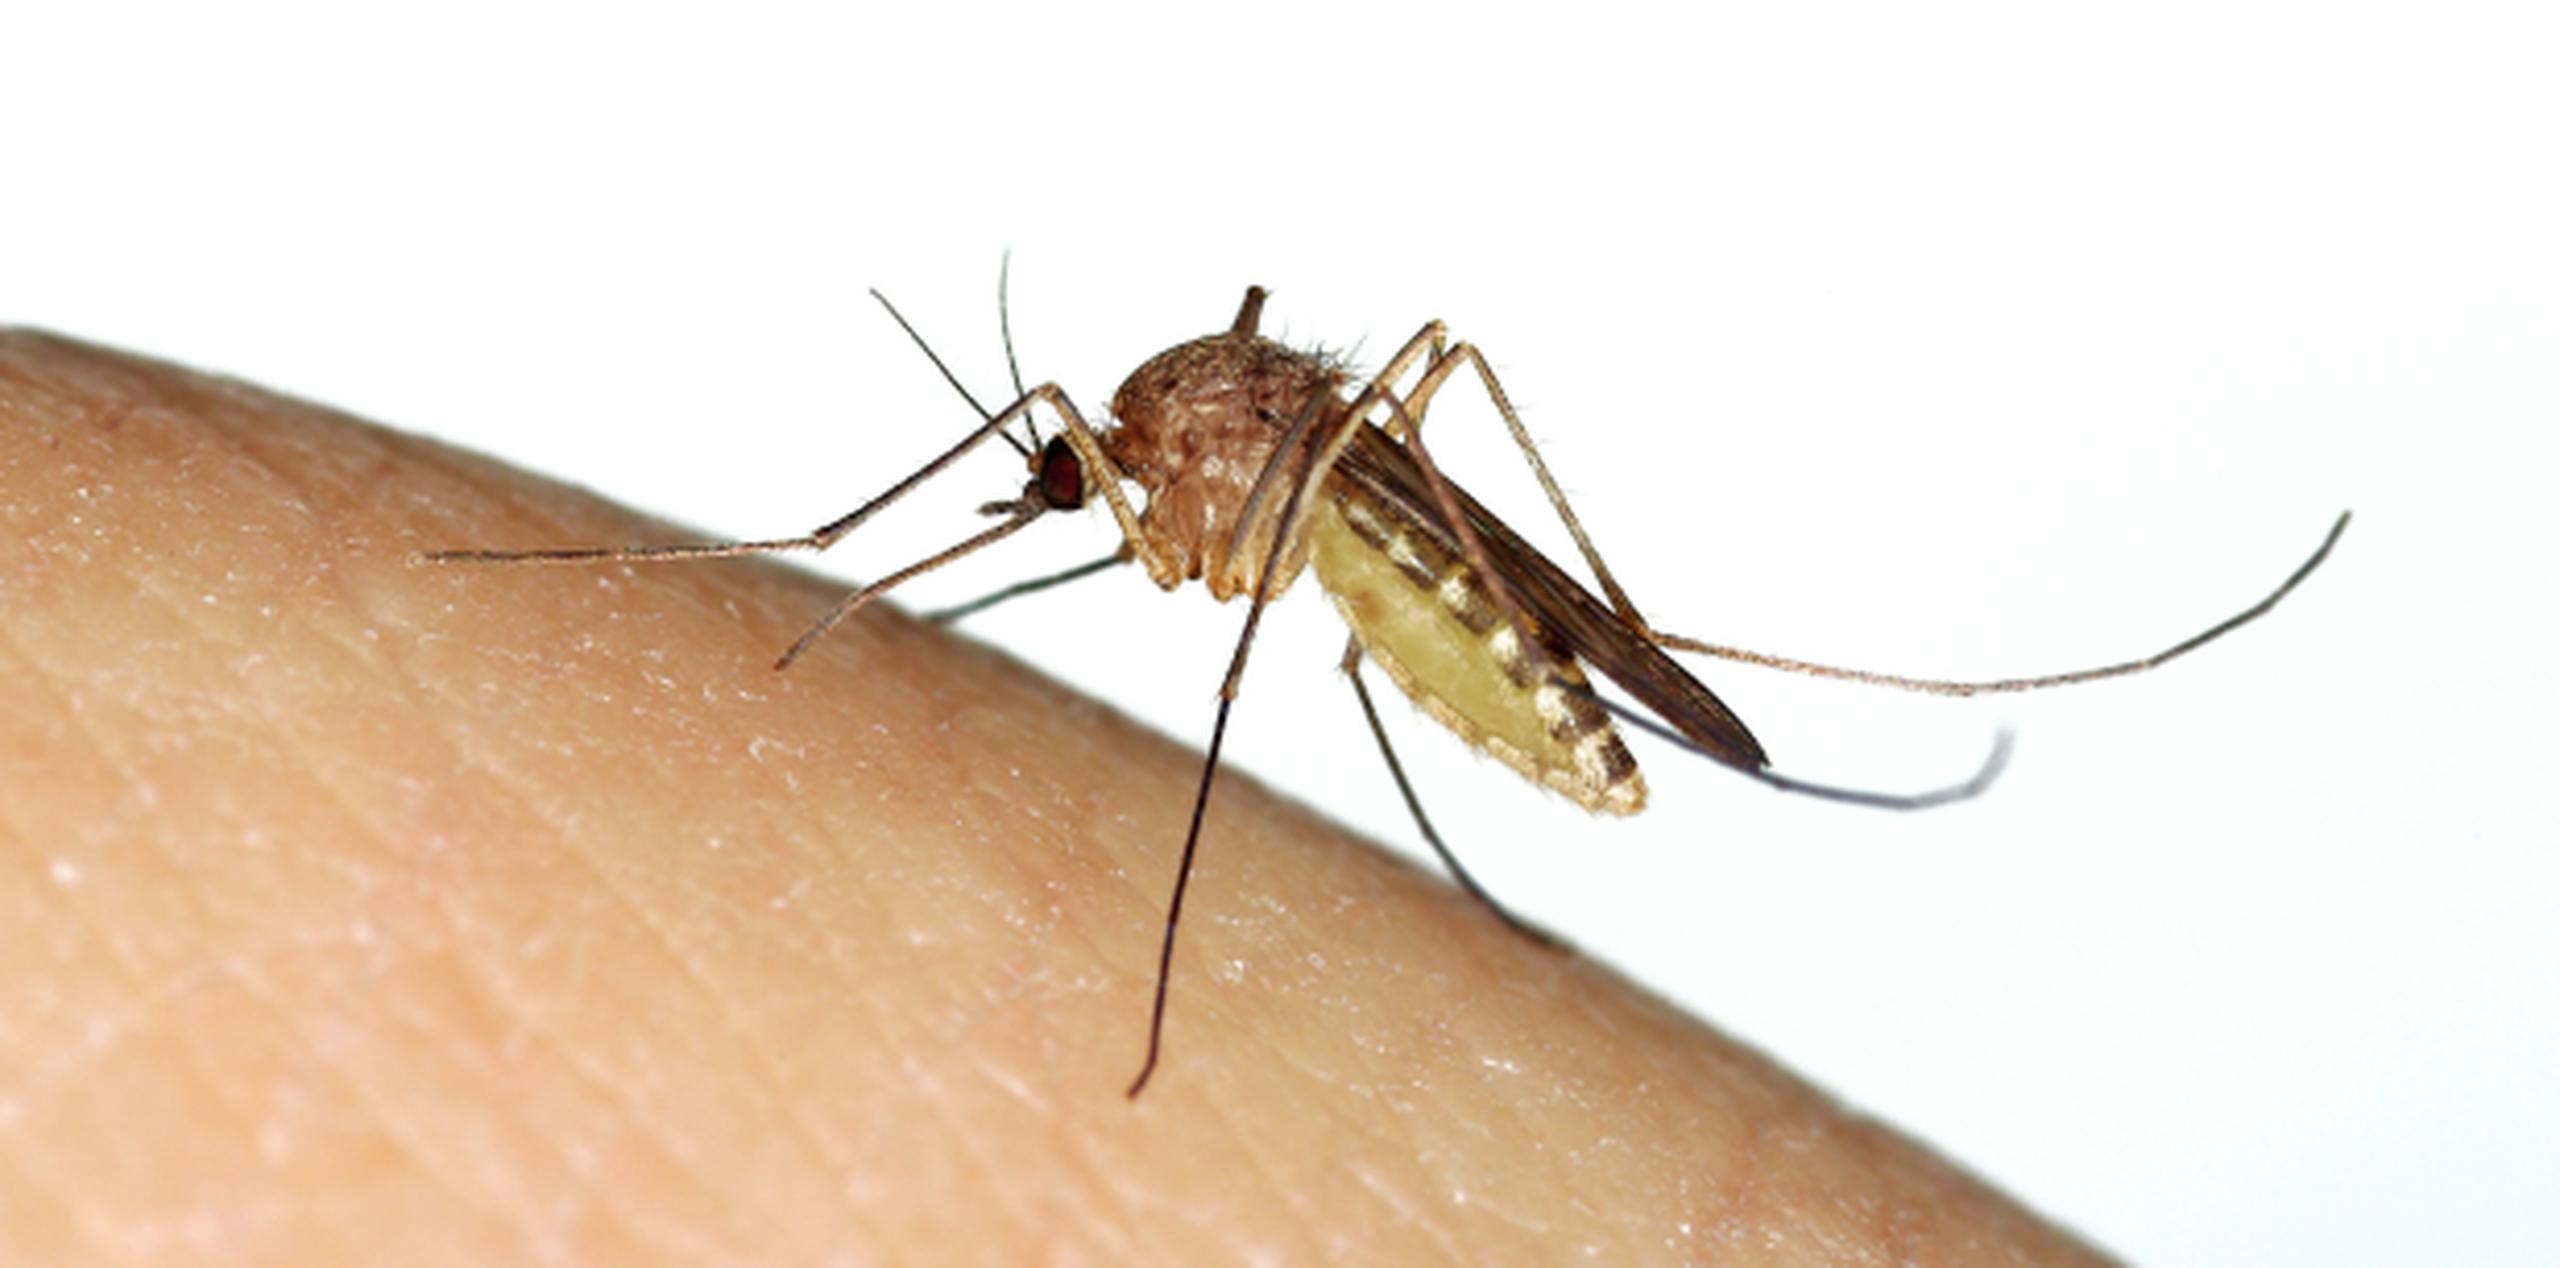 Los mosquitos usados en el estudio fueron capturados en la ciudad de Recife, una de las más afectadas por la epidemia de zika que castigó Brasil a comienzos del año pasado. (EFE / Thais Llorca)